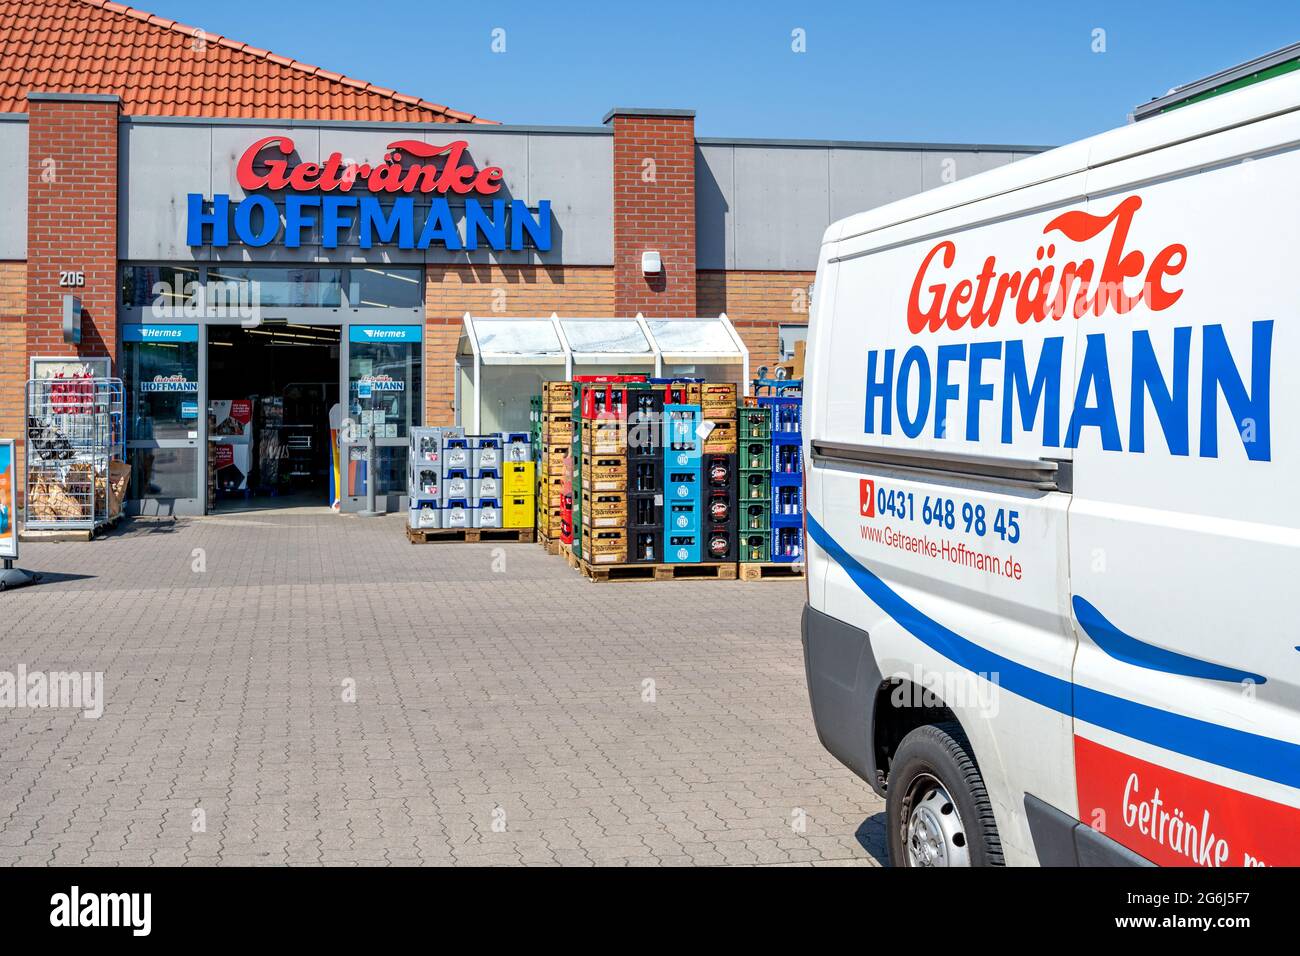 Getraenke Hoffmann Getränkeladen in Kiel, Deutschland Stockfoto